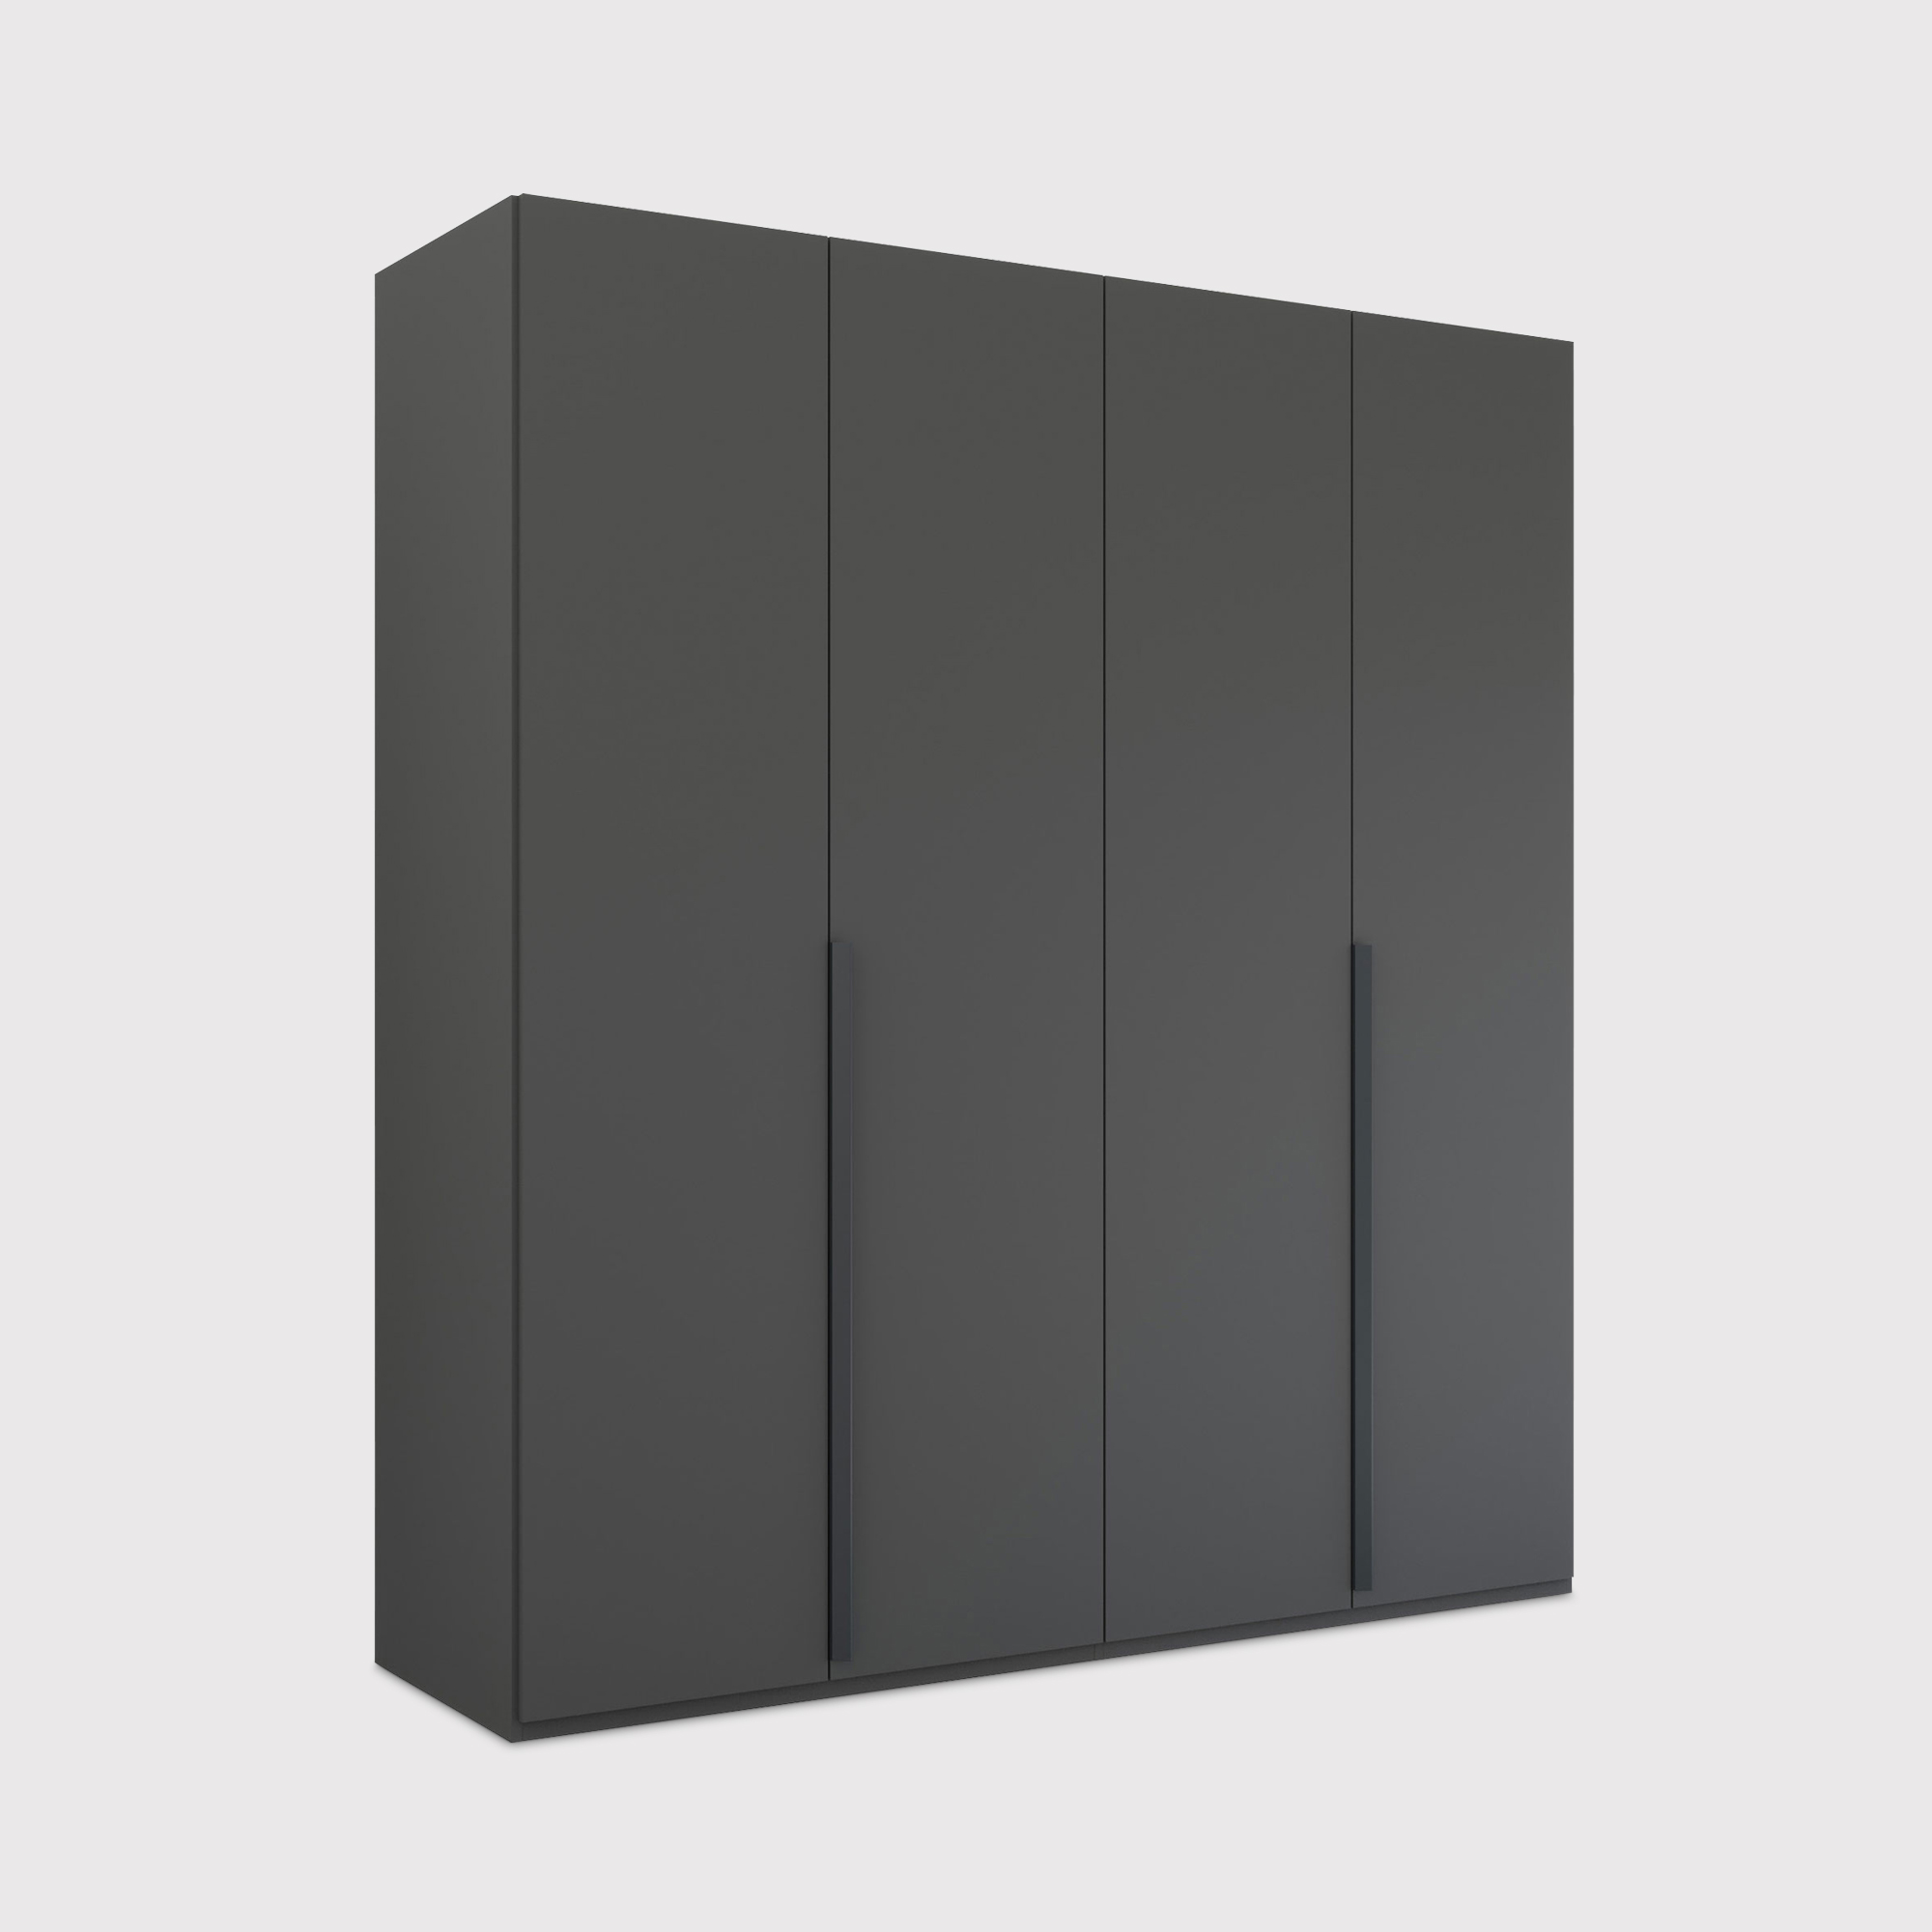 Frans 4 Door Wardrobe 201cm, Black | Barker & Stonehouse